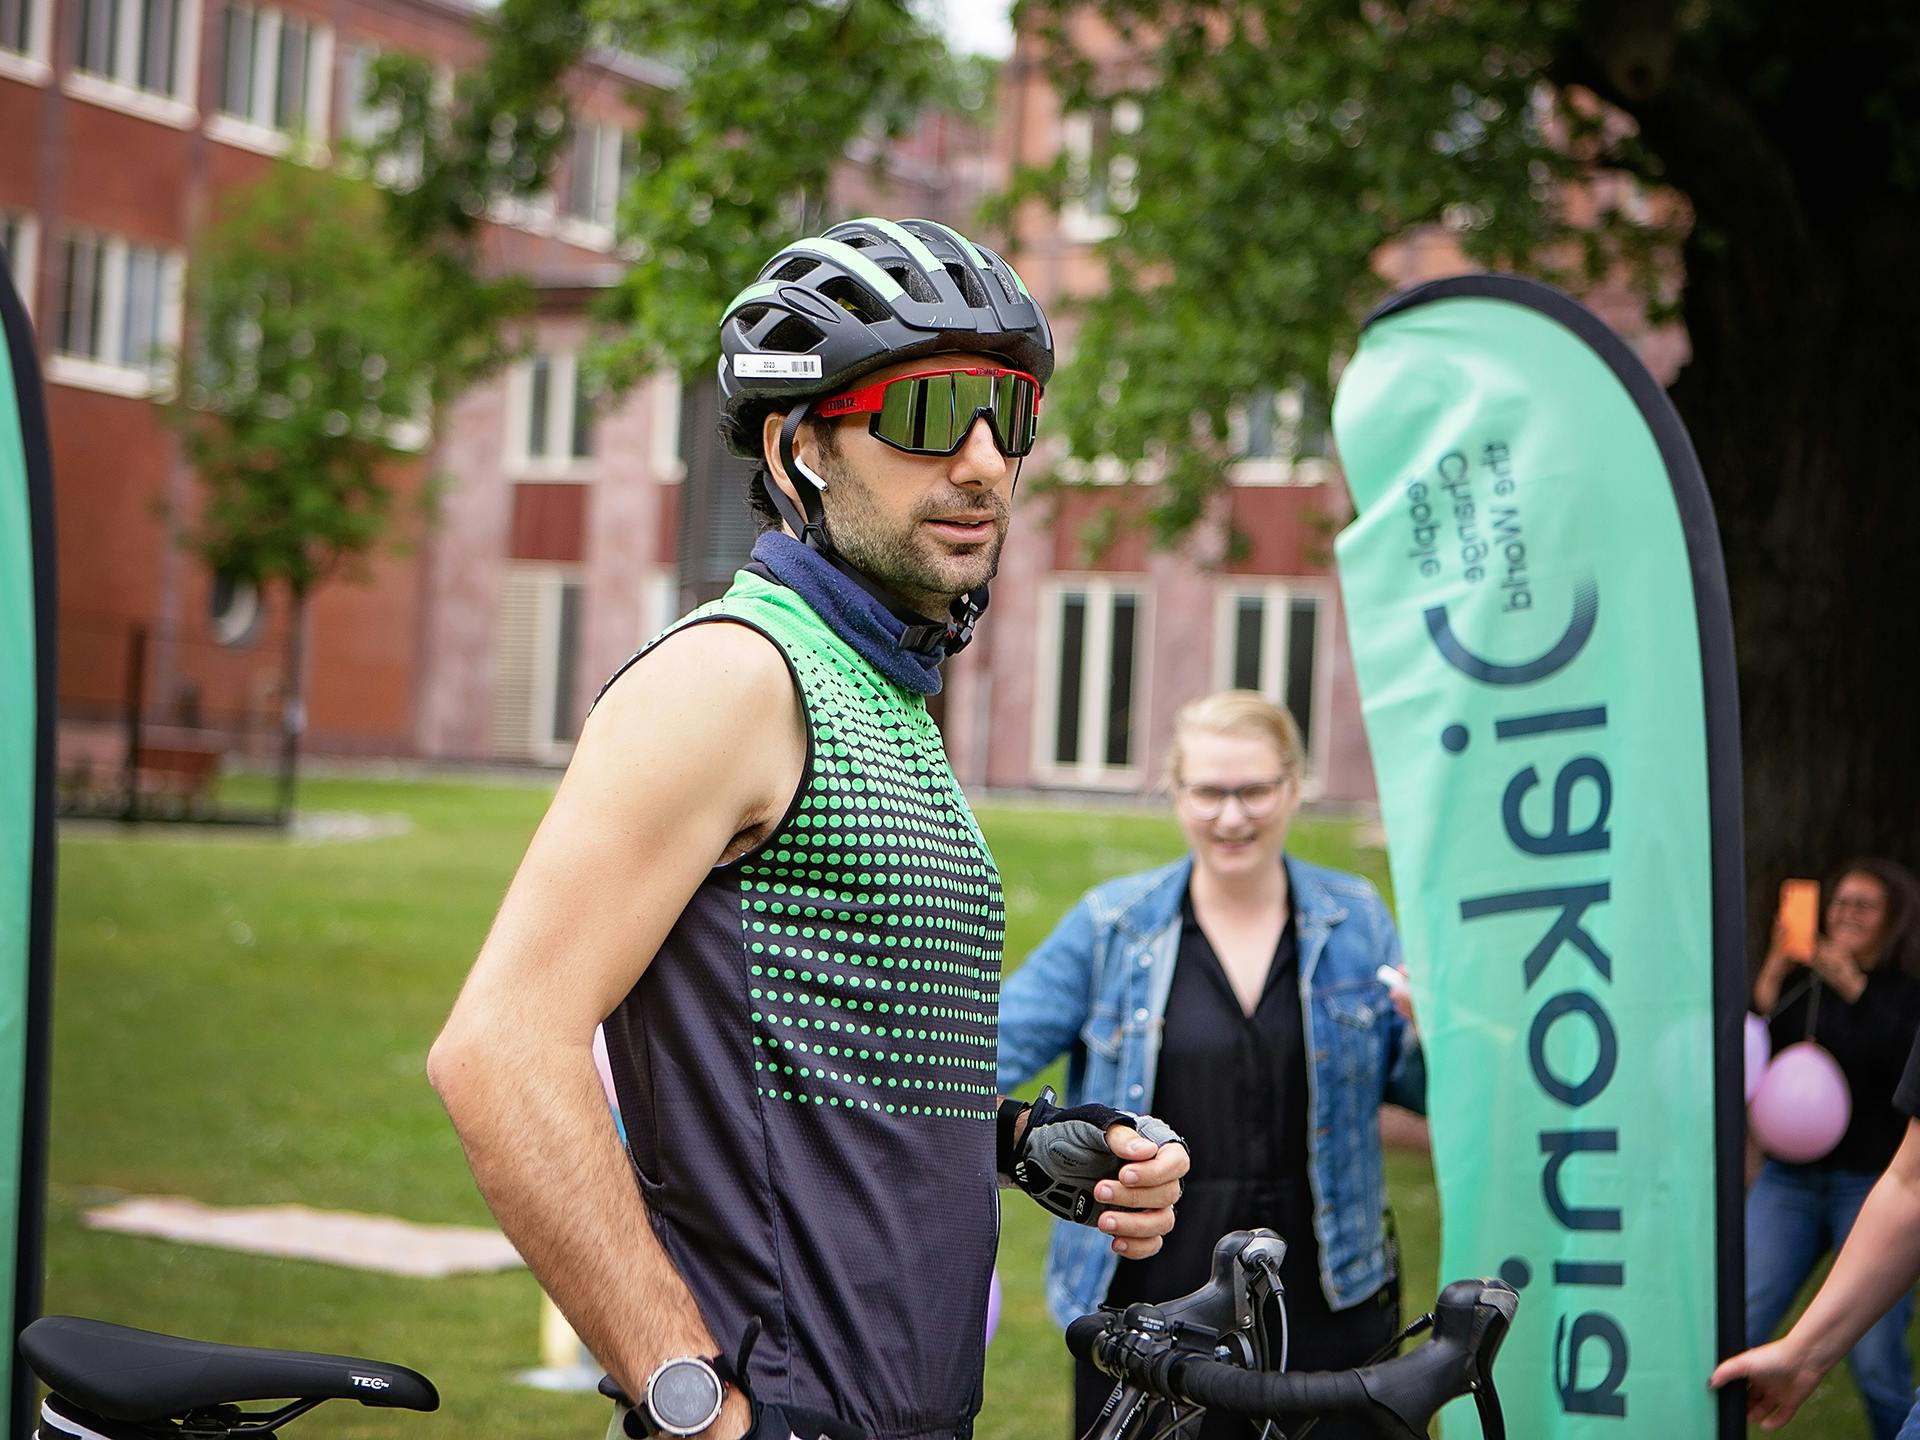 En man med solglasögon, cykelhjälm och träningslinne.